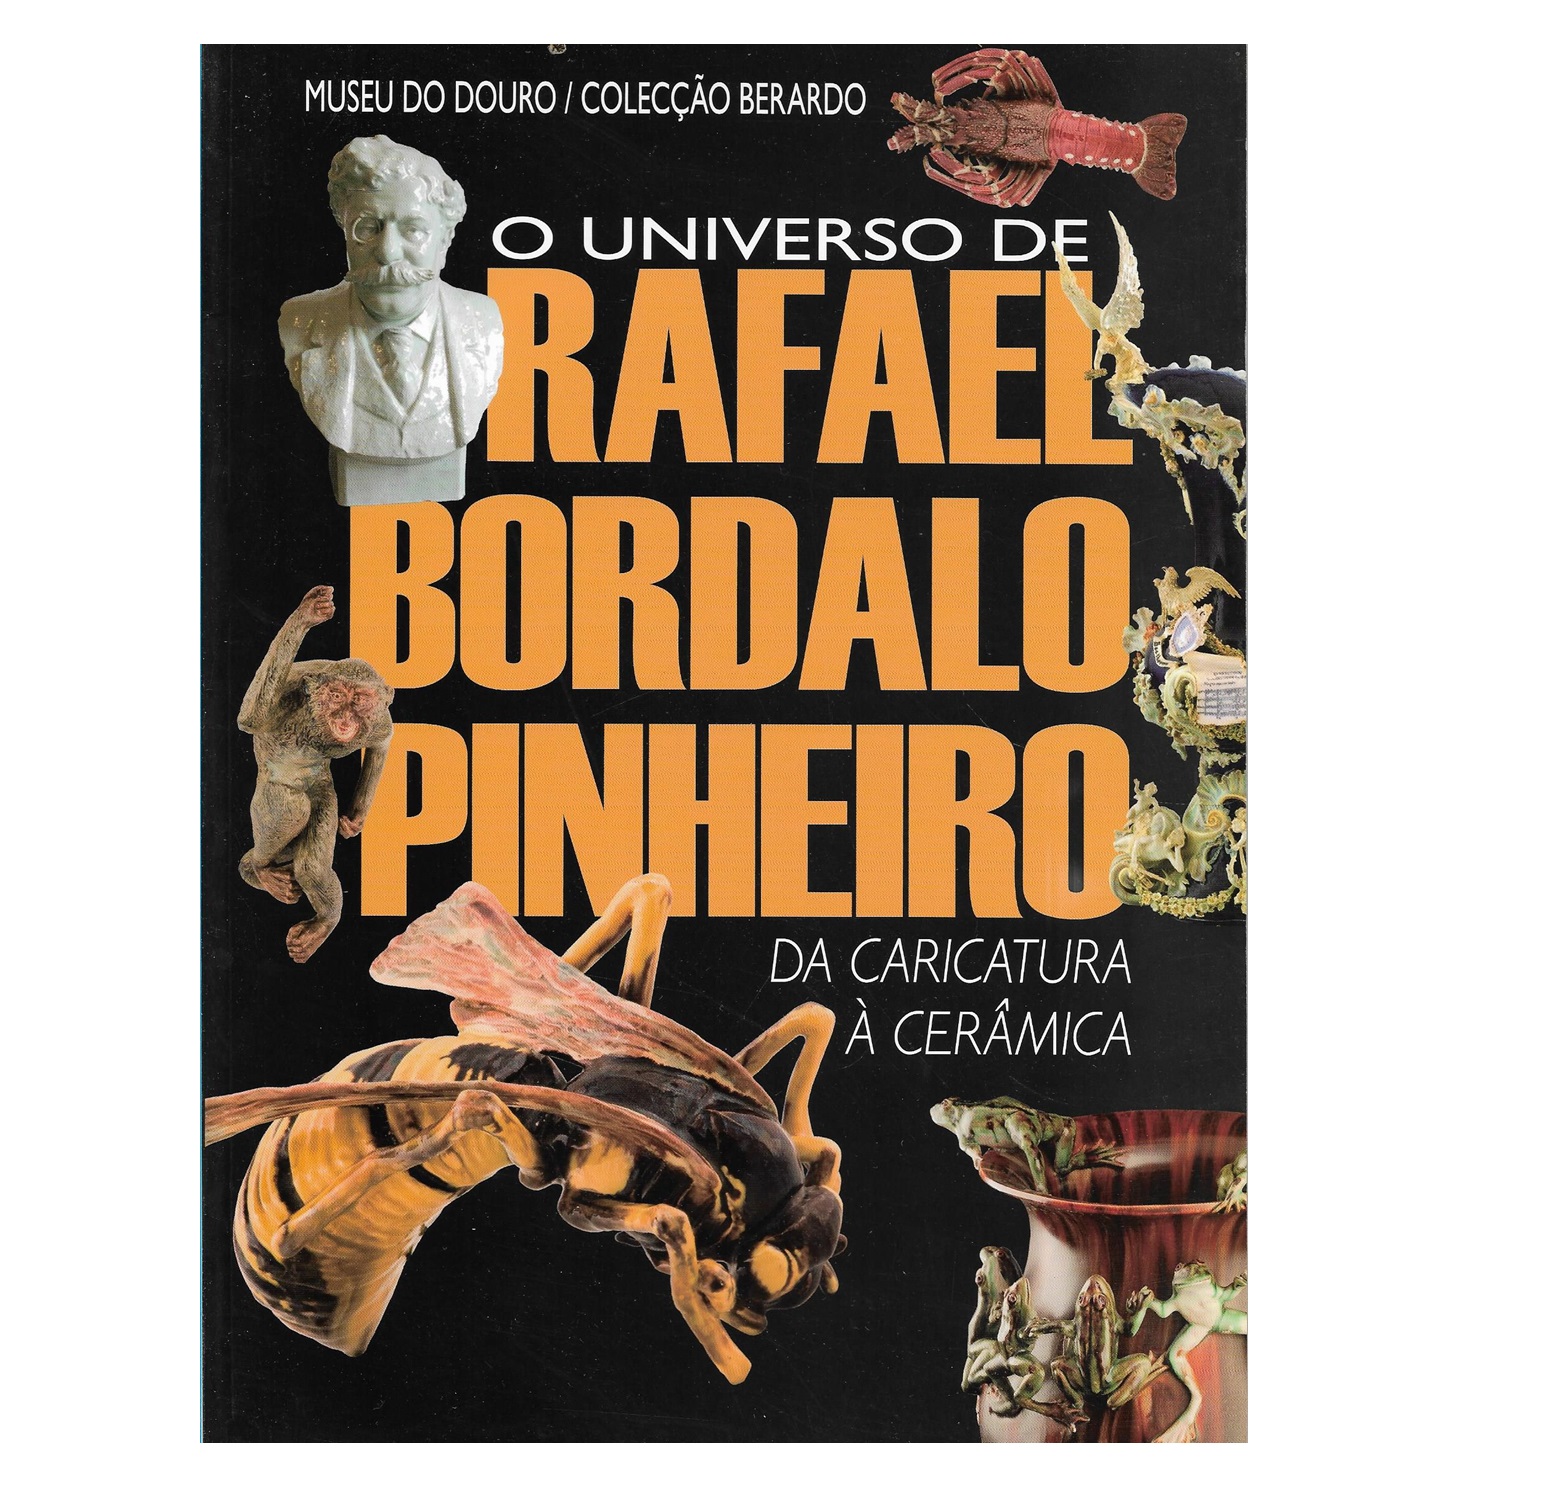 Livros e Narrativas: Rafael Bordalo Pinheiro